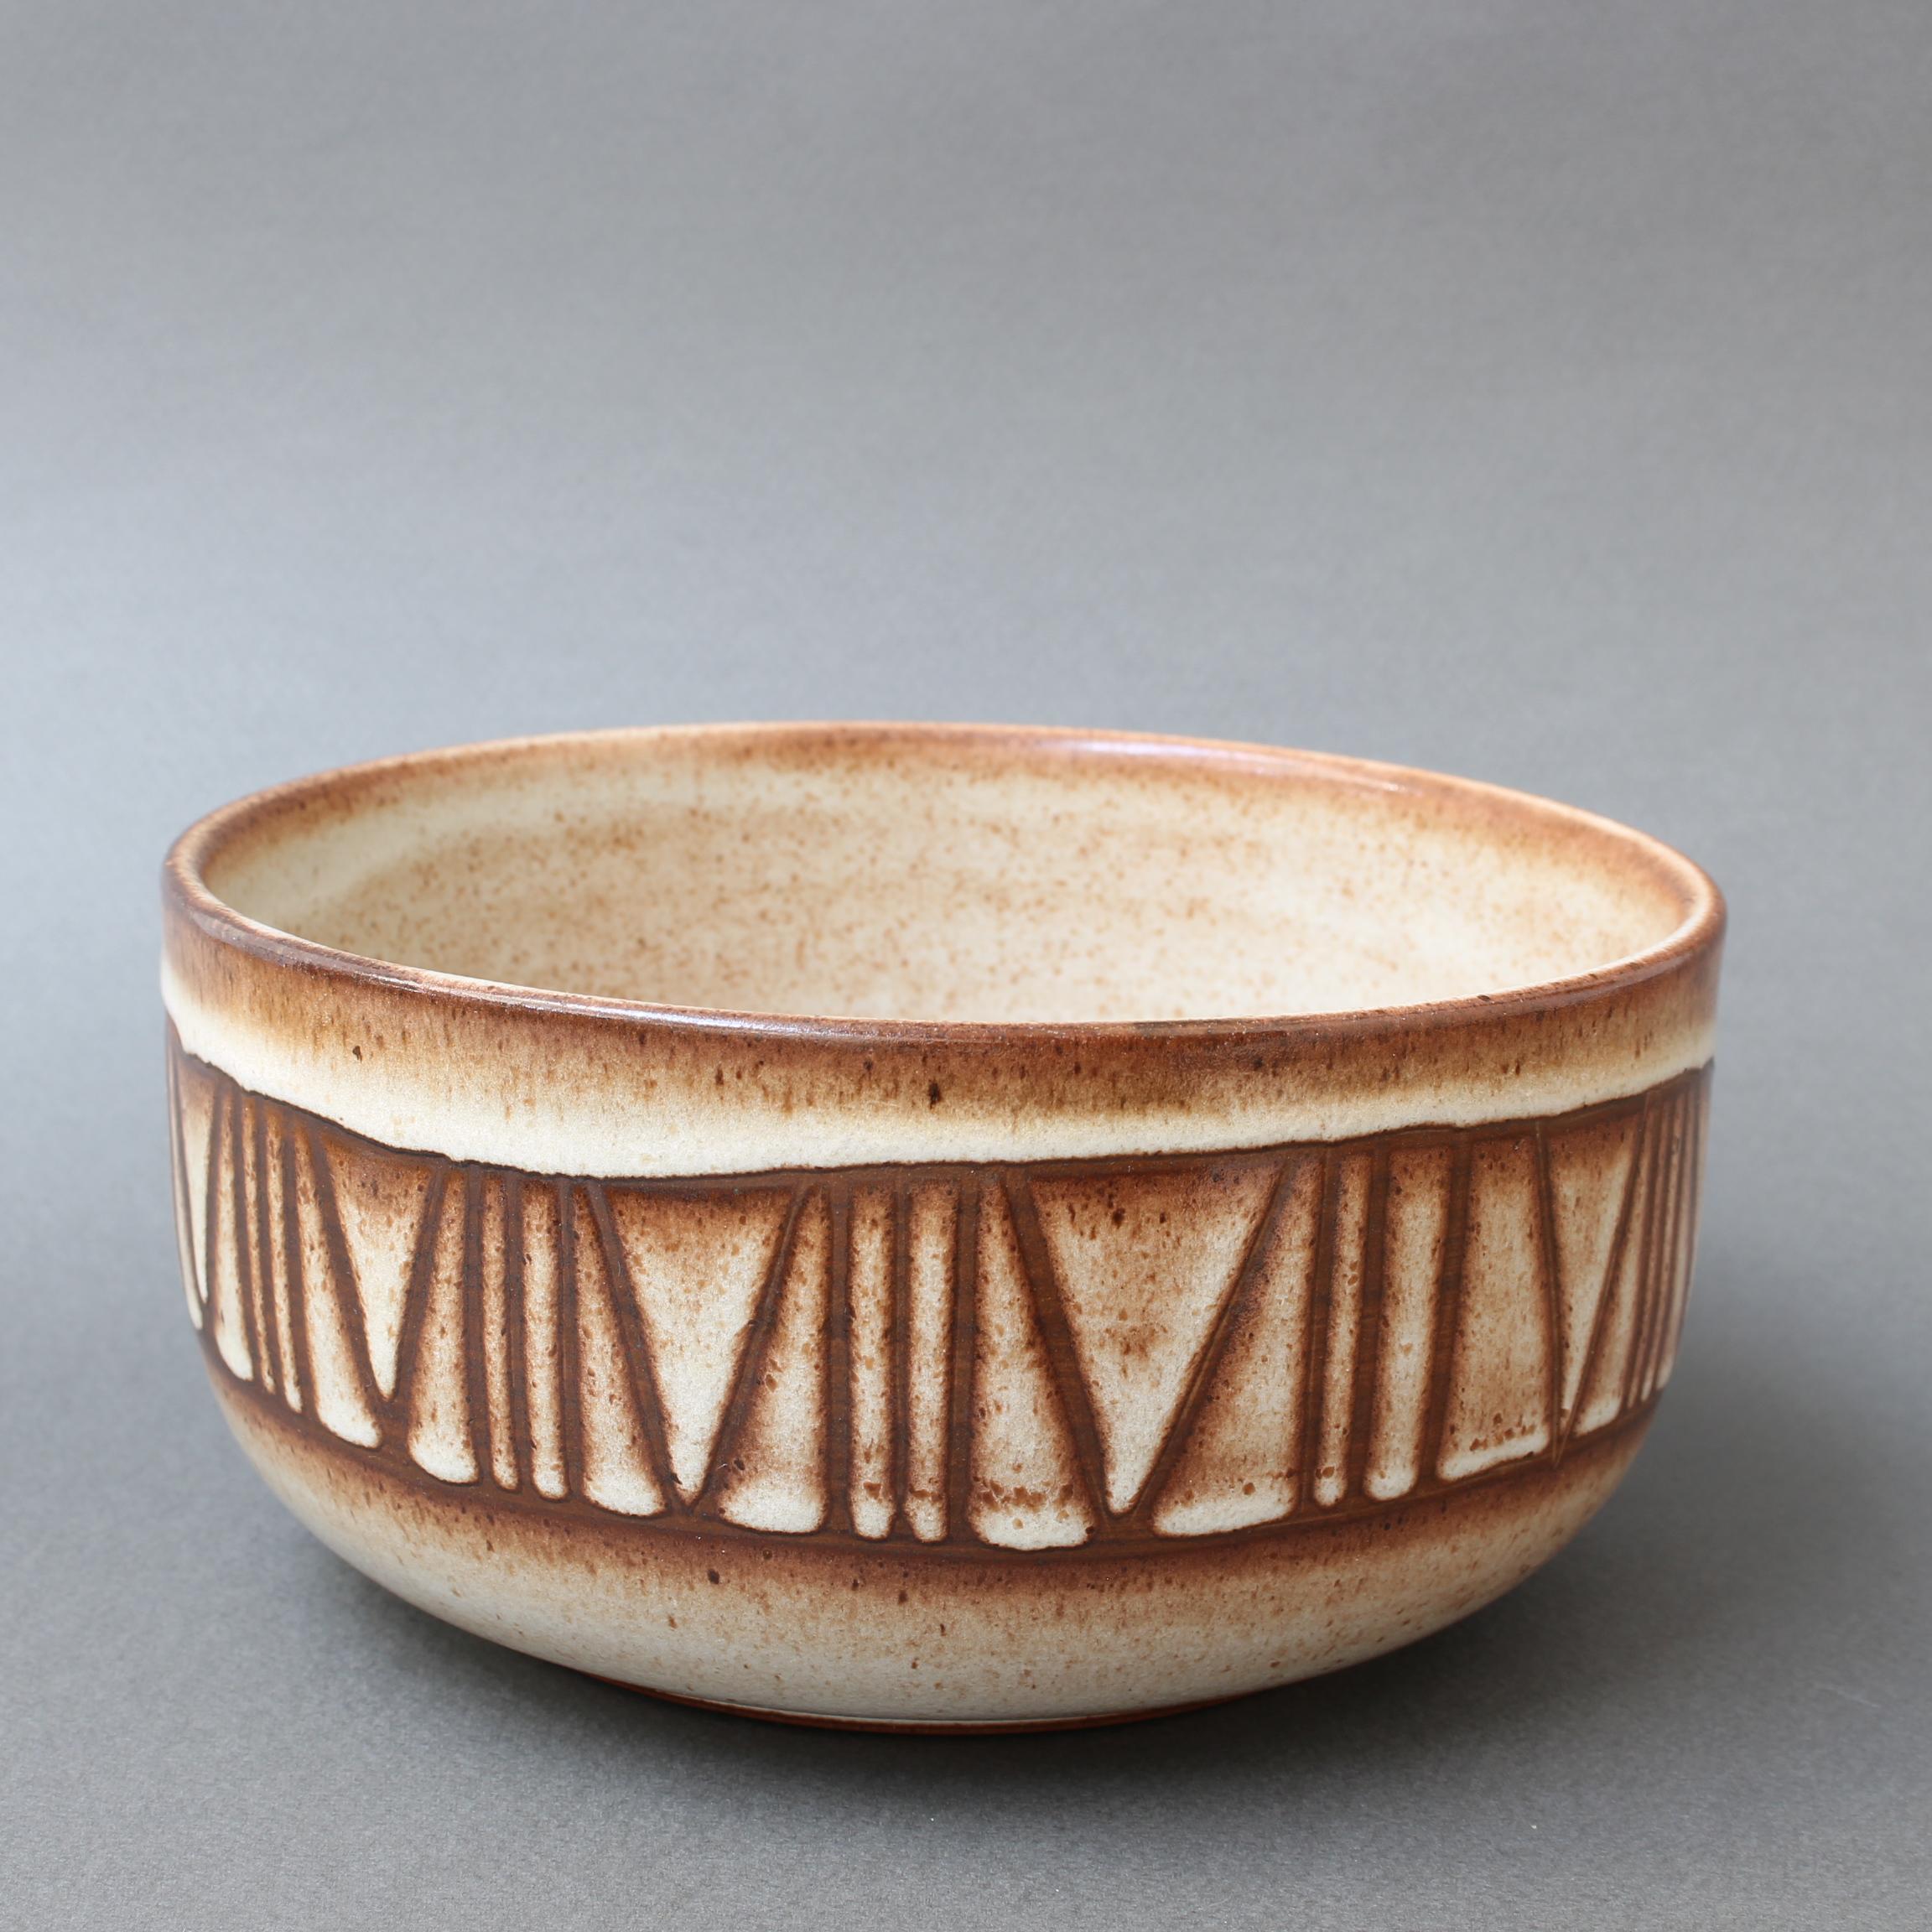 French Decorative Bowl by Jacques Pouchain, Atelier Dieulefit, circa 1960s